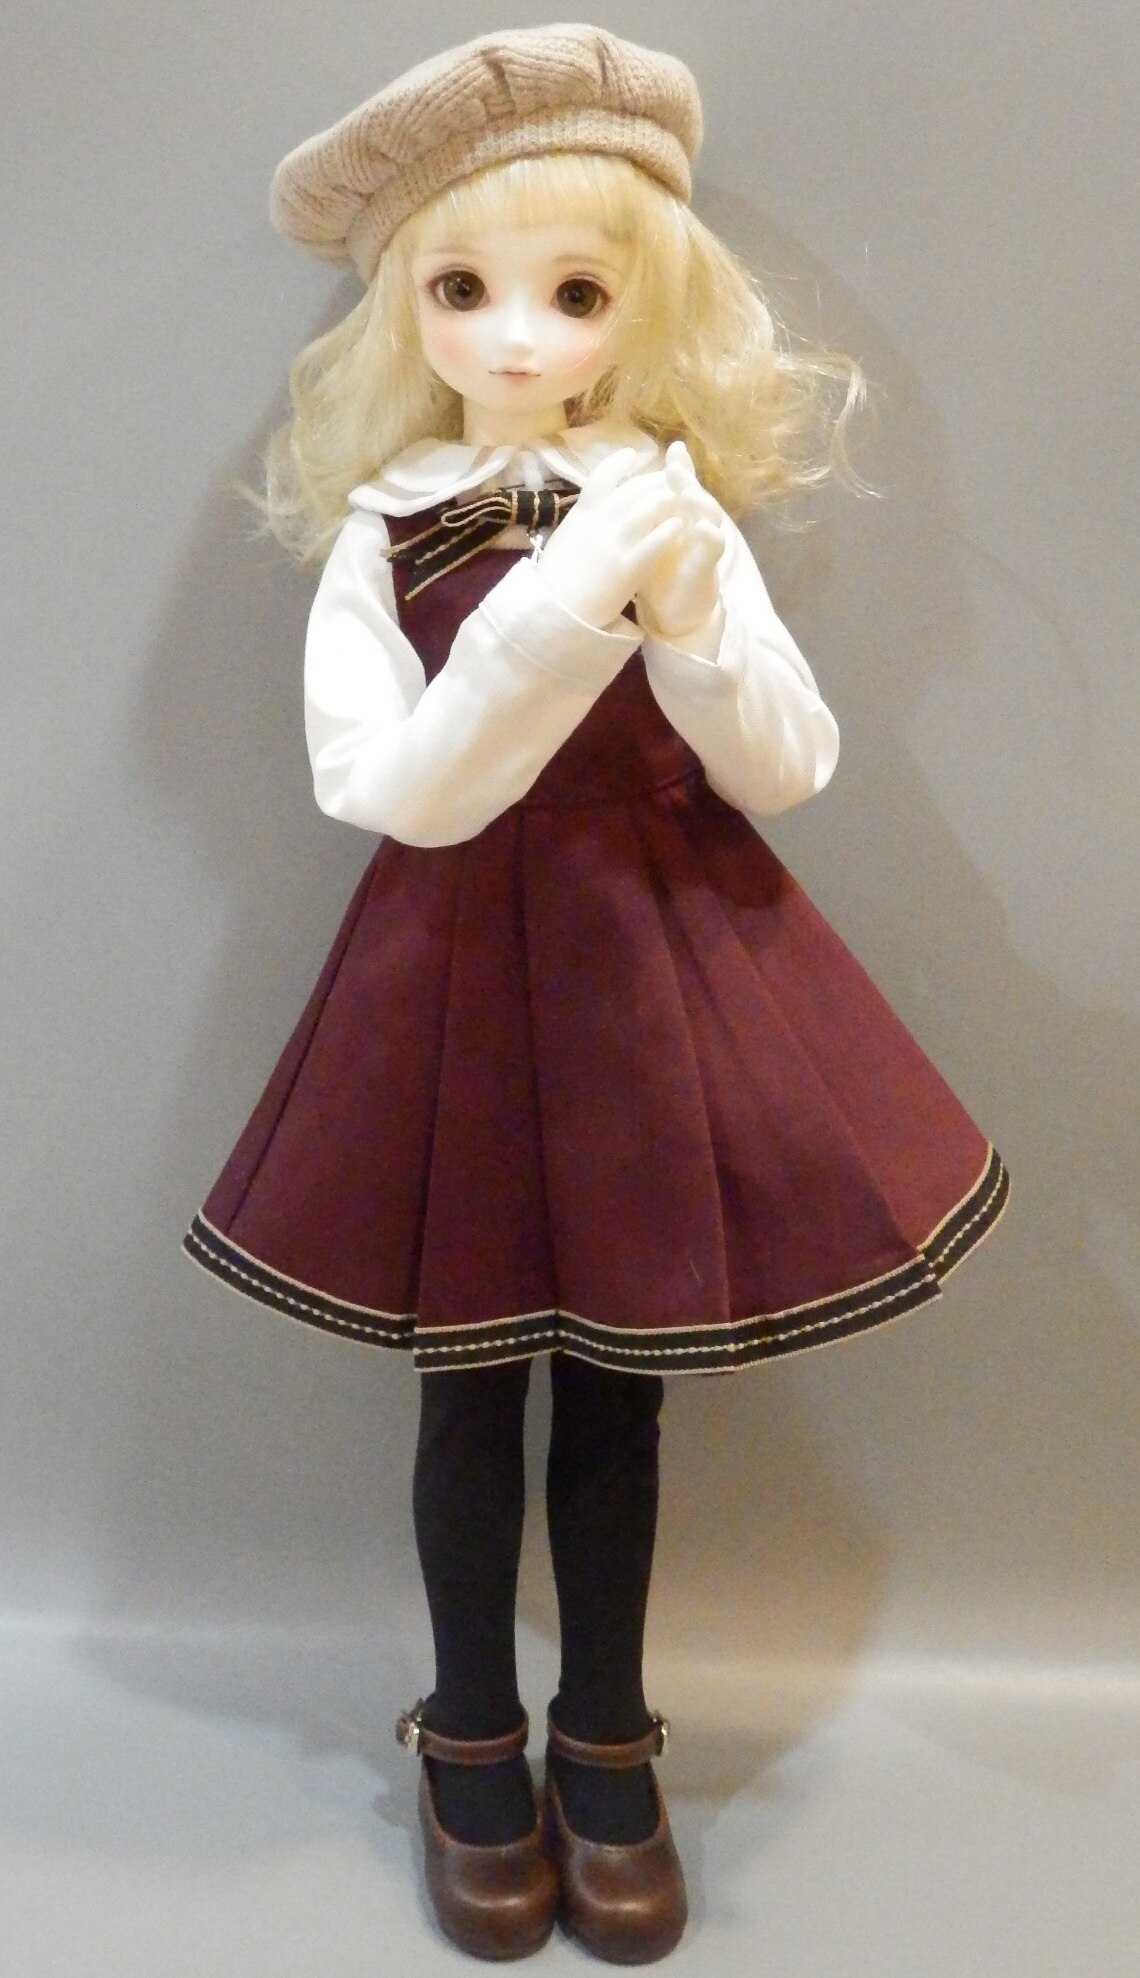 オリジナルブランド ボークス SDM 白蓮 フェア肌 コーディネートモデル おもちゃ/人形